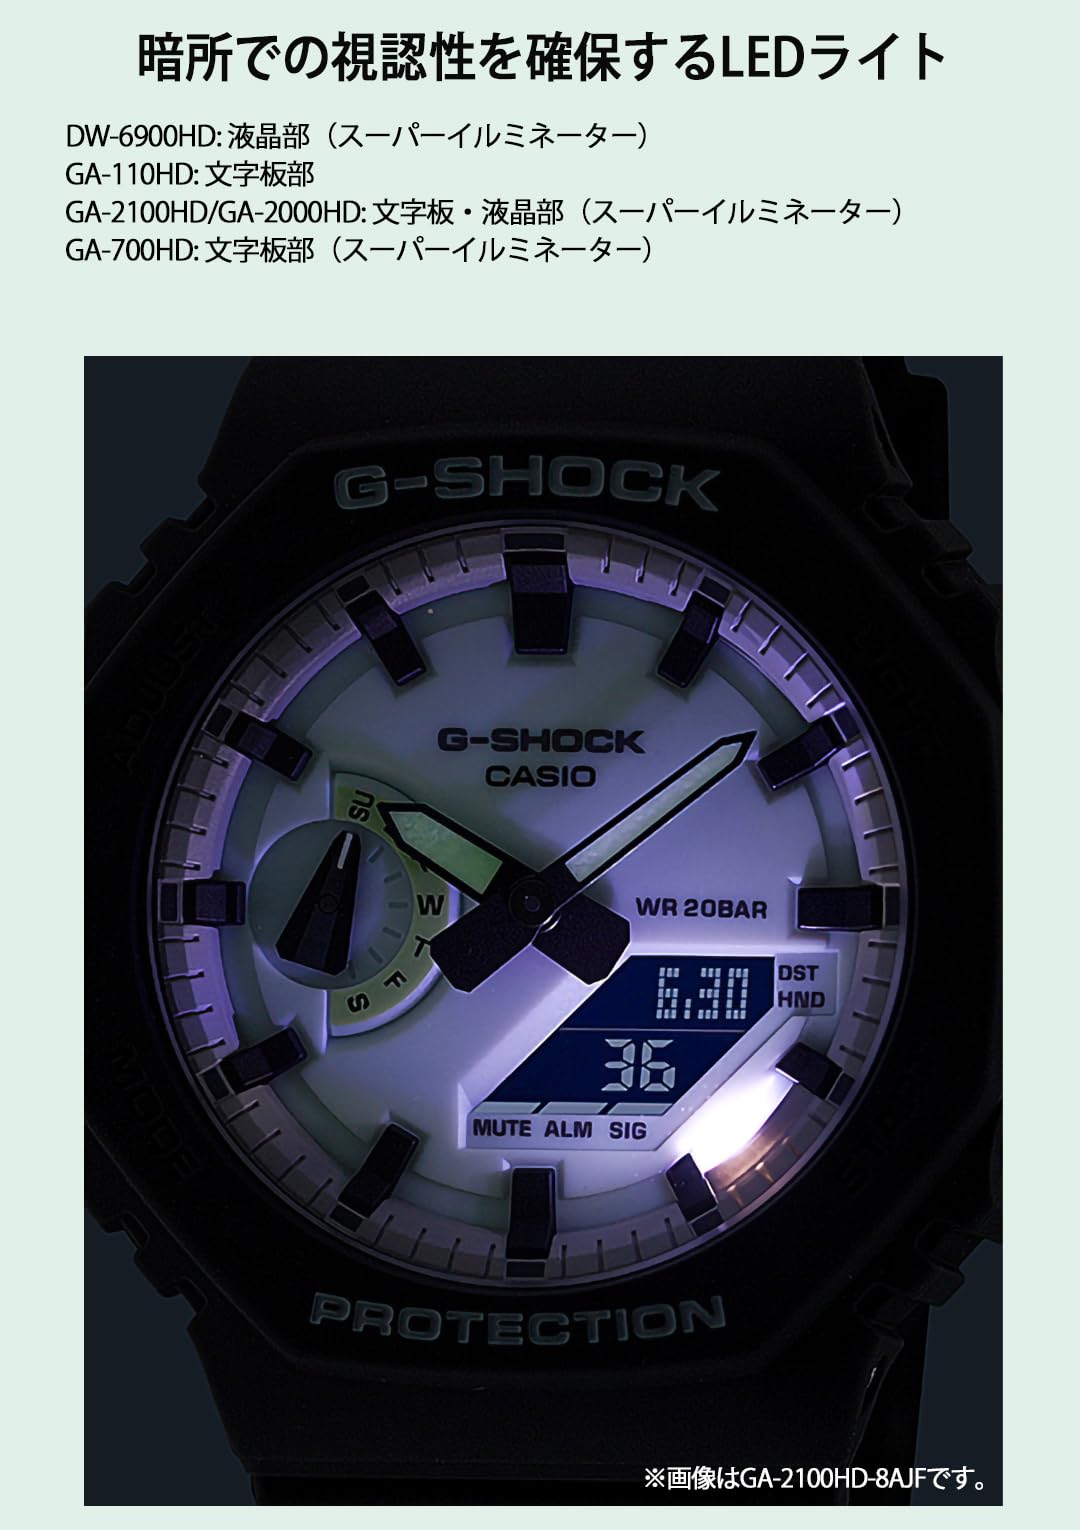 ジーショック [カシオ] 腕時計 【国内正規品】Hidden Glow Series DW-6900HD-8JF メンズ グレー - BanzaiHobby